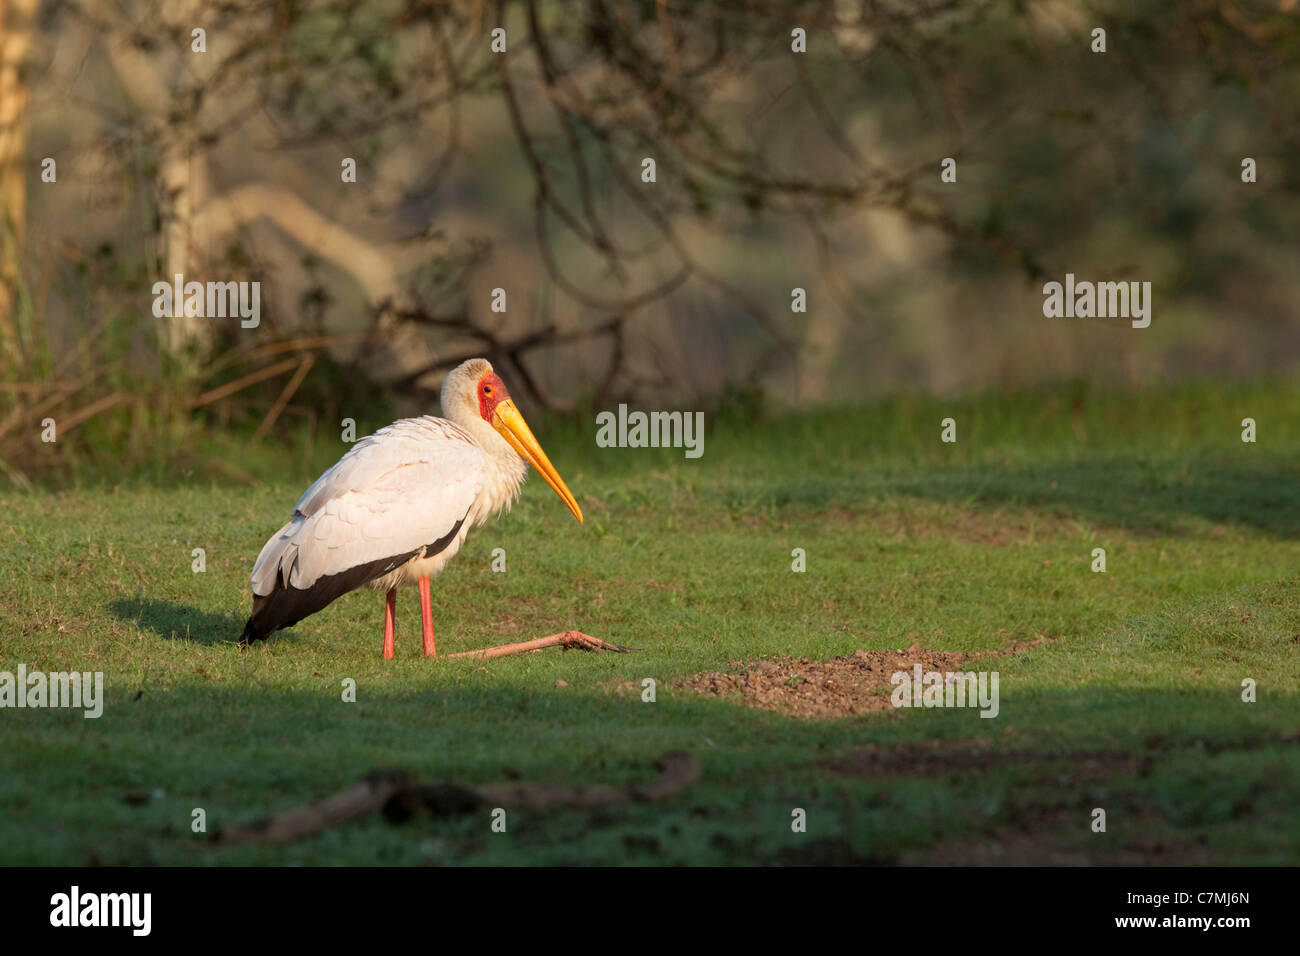 Cigogne à bec jaune (Mycteria ibis) au repos. Ndumo Game Reserve, Kwazulu-Natal, Afrique du Sud. Novembre 2010. Banque D'Images